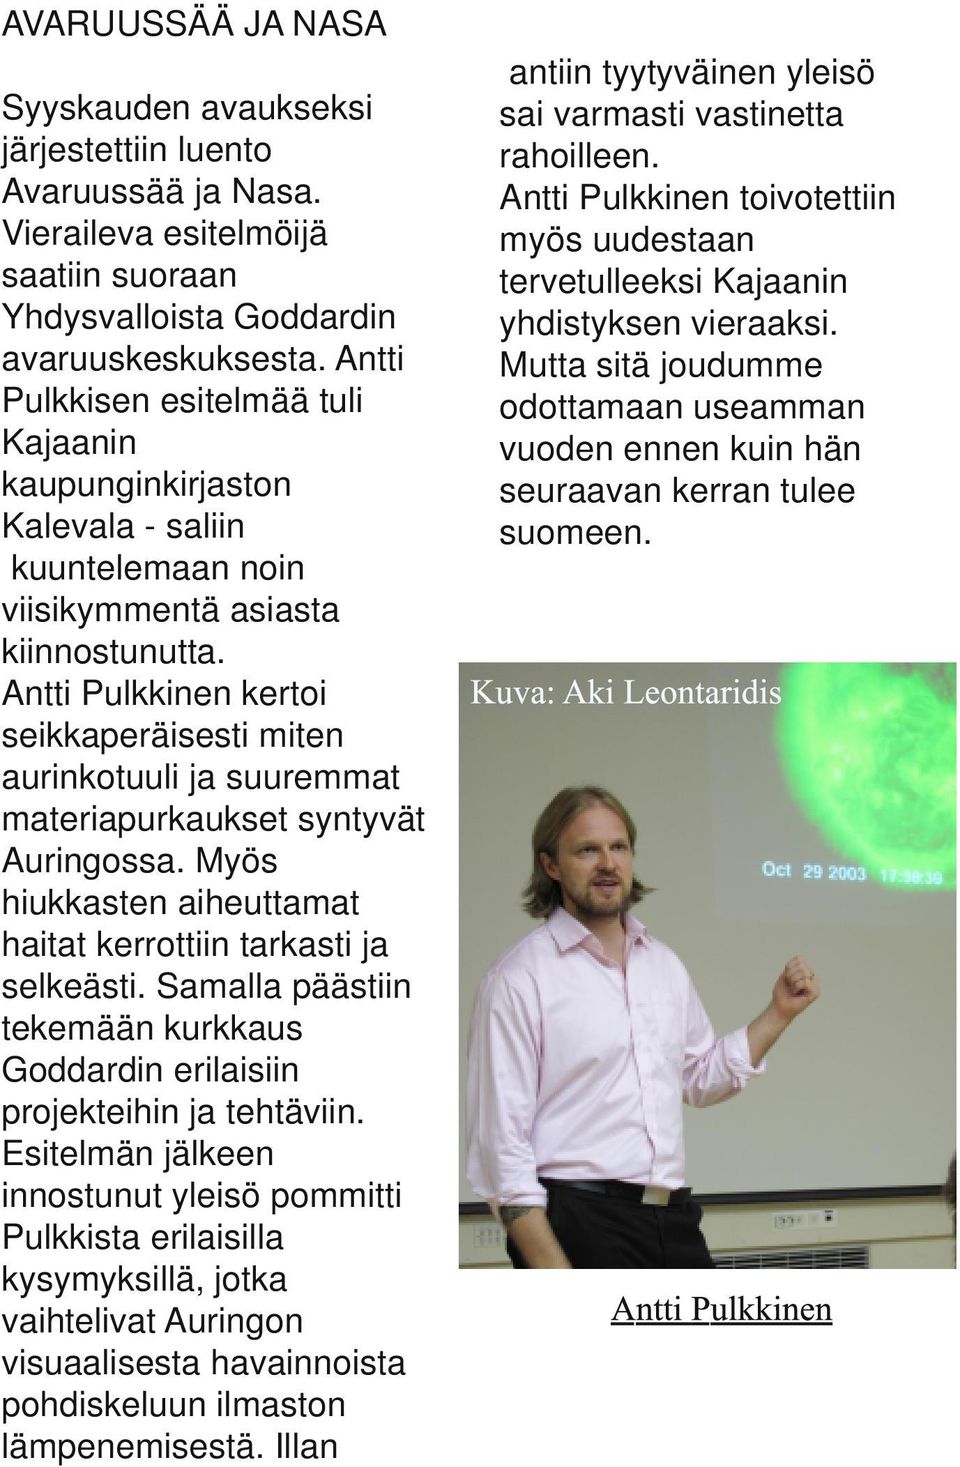 Antti Pulkkinen kertoi seikkaperäisesti miten aurinkotuuli ja suuremmat materiapurkaukset syntyvät Auringossa. Myös hiukkasten aiheuttamat haitat kerrottiin tarkasti ja selkeästi.